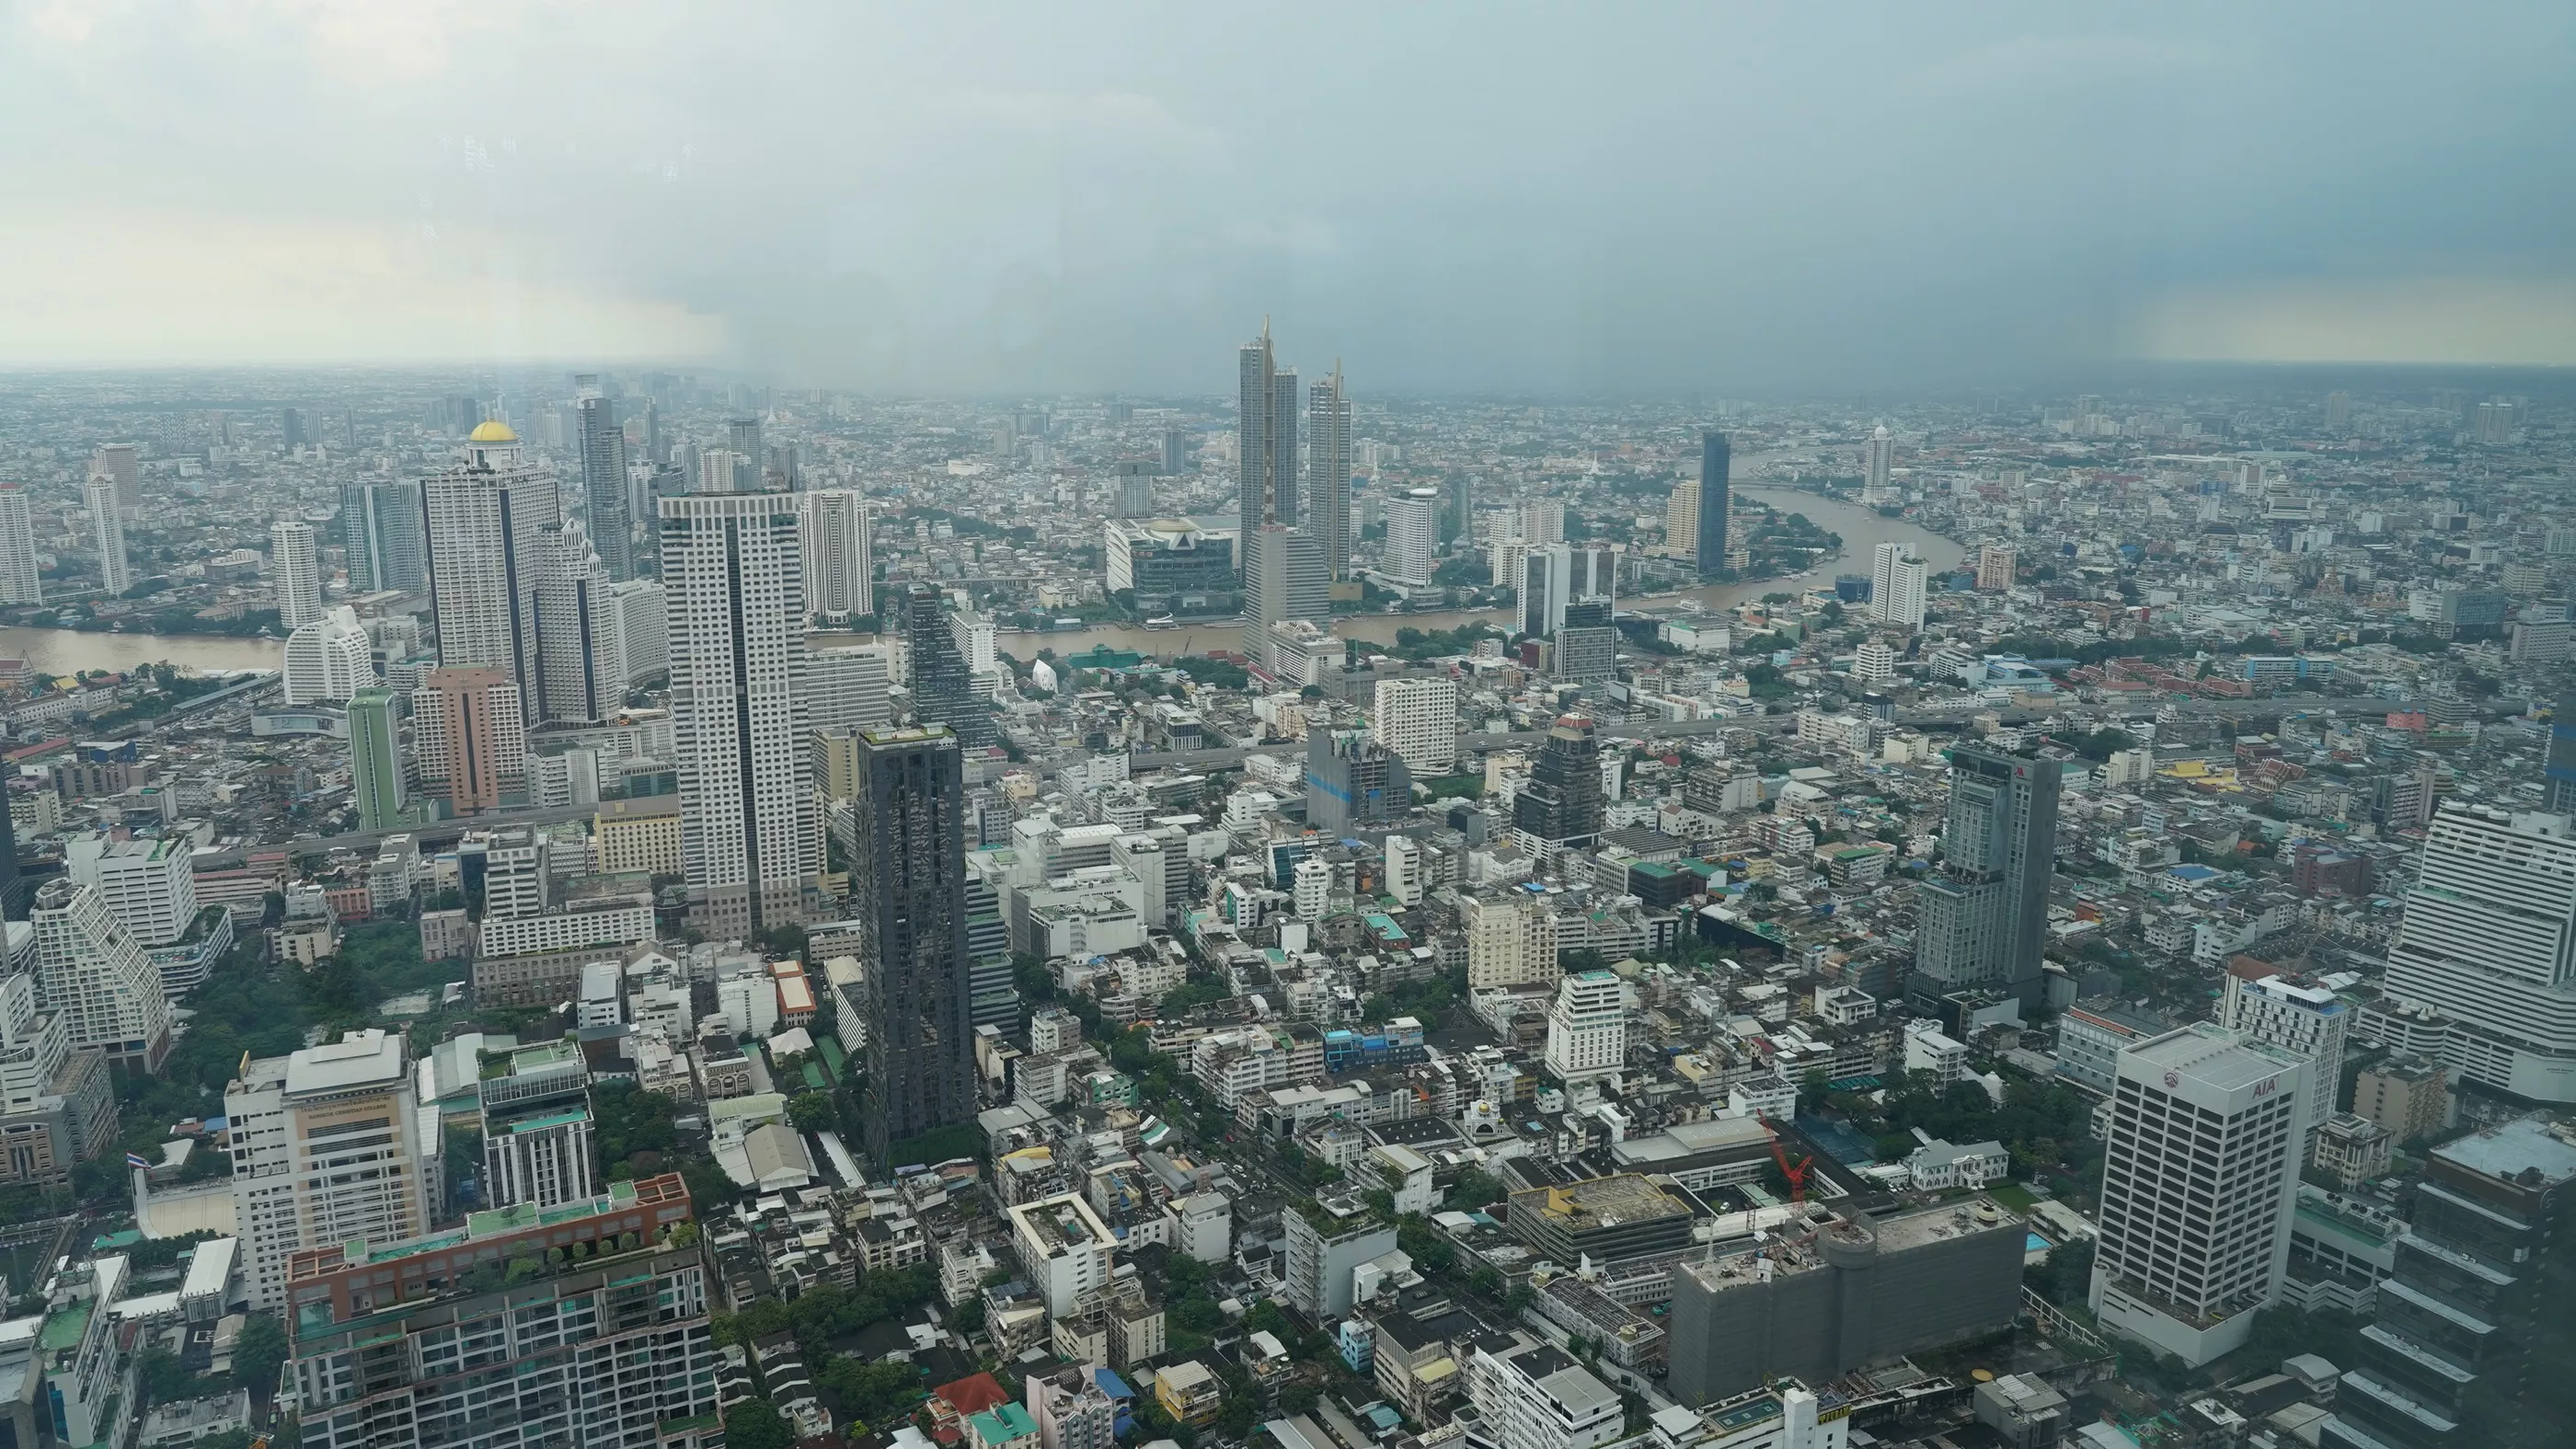 Увидеть Бангкок с высоты птичьего полета можно на смотровой площадке Mahanakhon Skywalk, которая находится в небоскребе King Power Mahanakhon. С высоты 78-го этажа открывается потрясающий вид на город даже в пасмурную и дождливую погоду